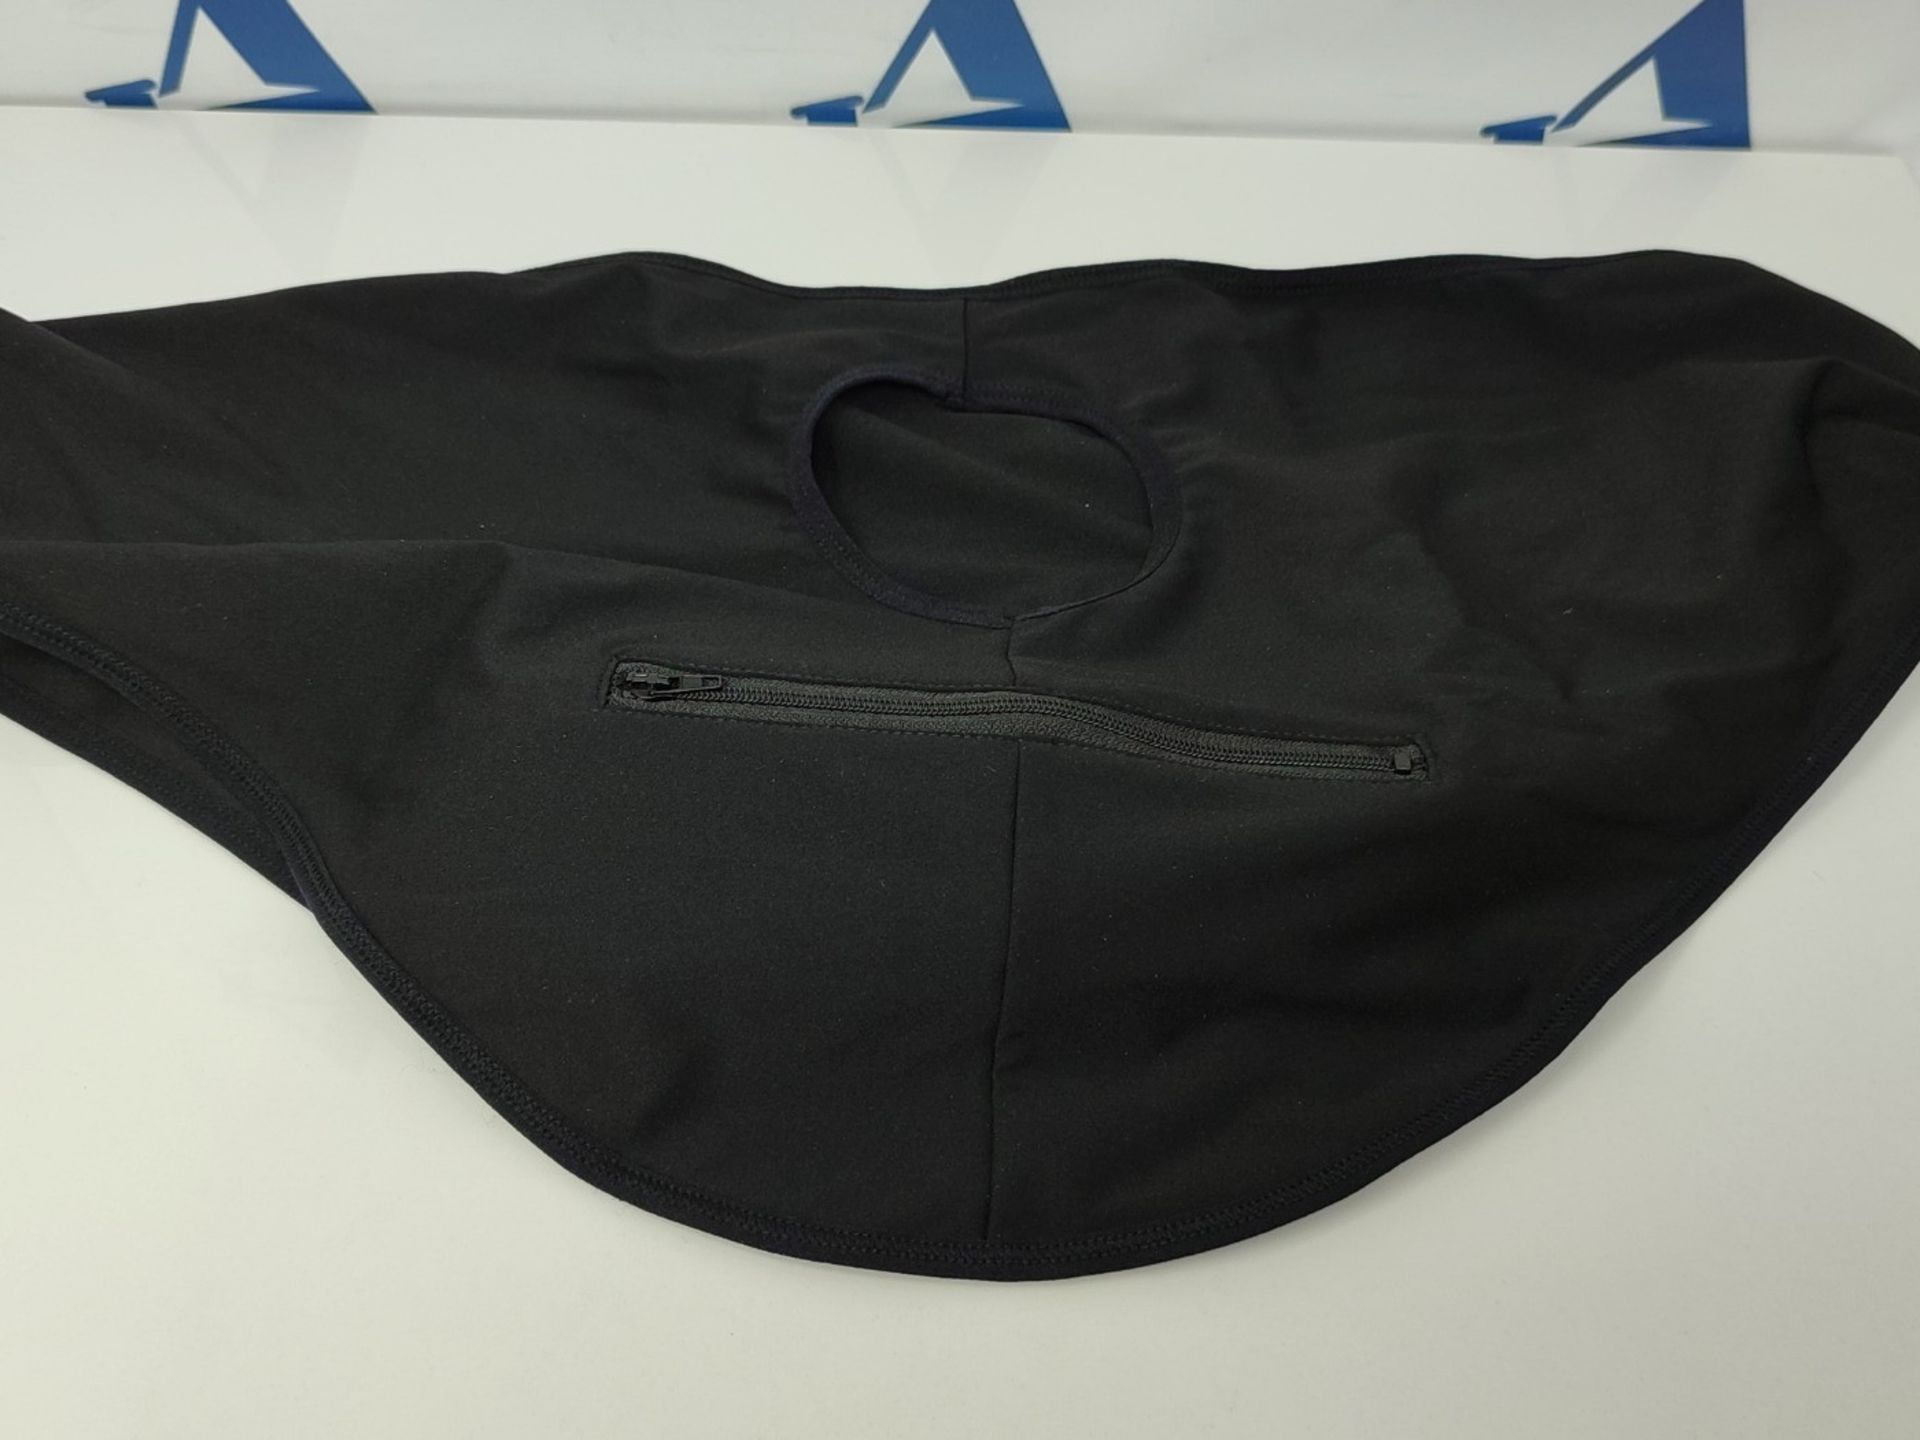 Heagimed Stoma Bag Belt for MenÿBlack Ostomy Support Belt for Swimming, Inner Pocket - Image 2 of 2